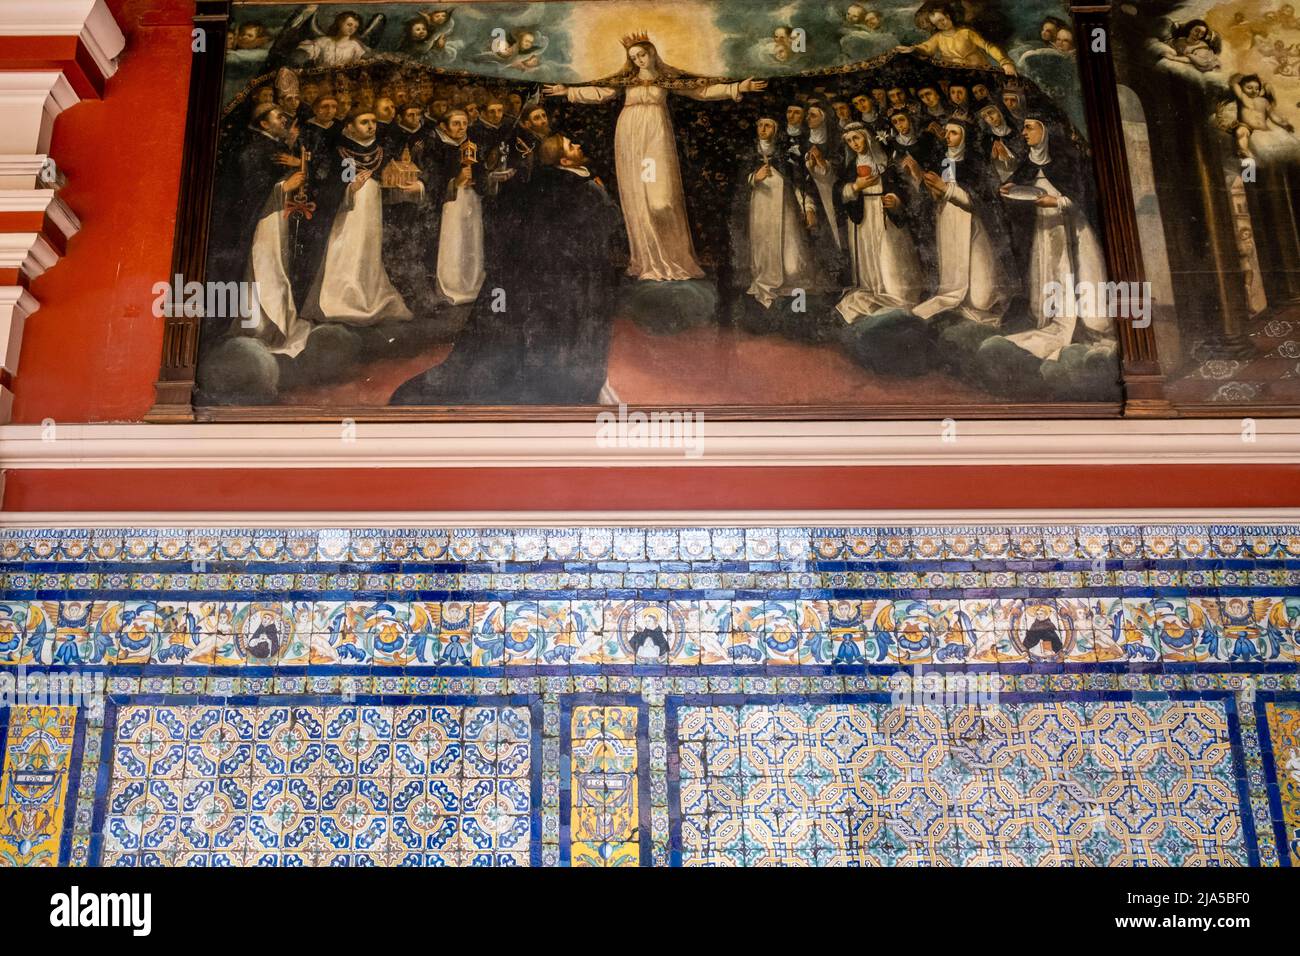 Paneles coloridos y pinturas históricas en el Convento de Santo Domingo, Lima, Perú. Foto de stock